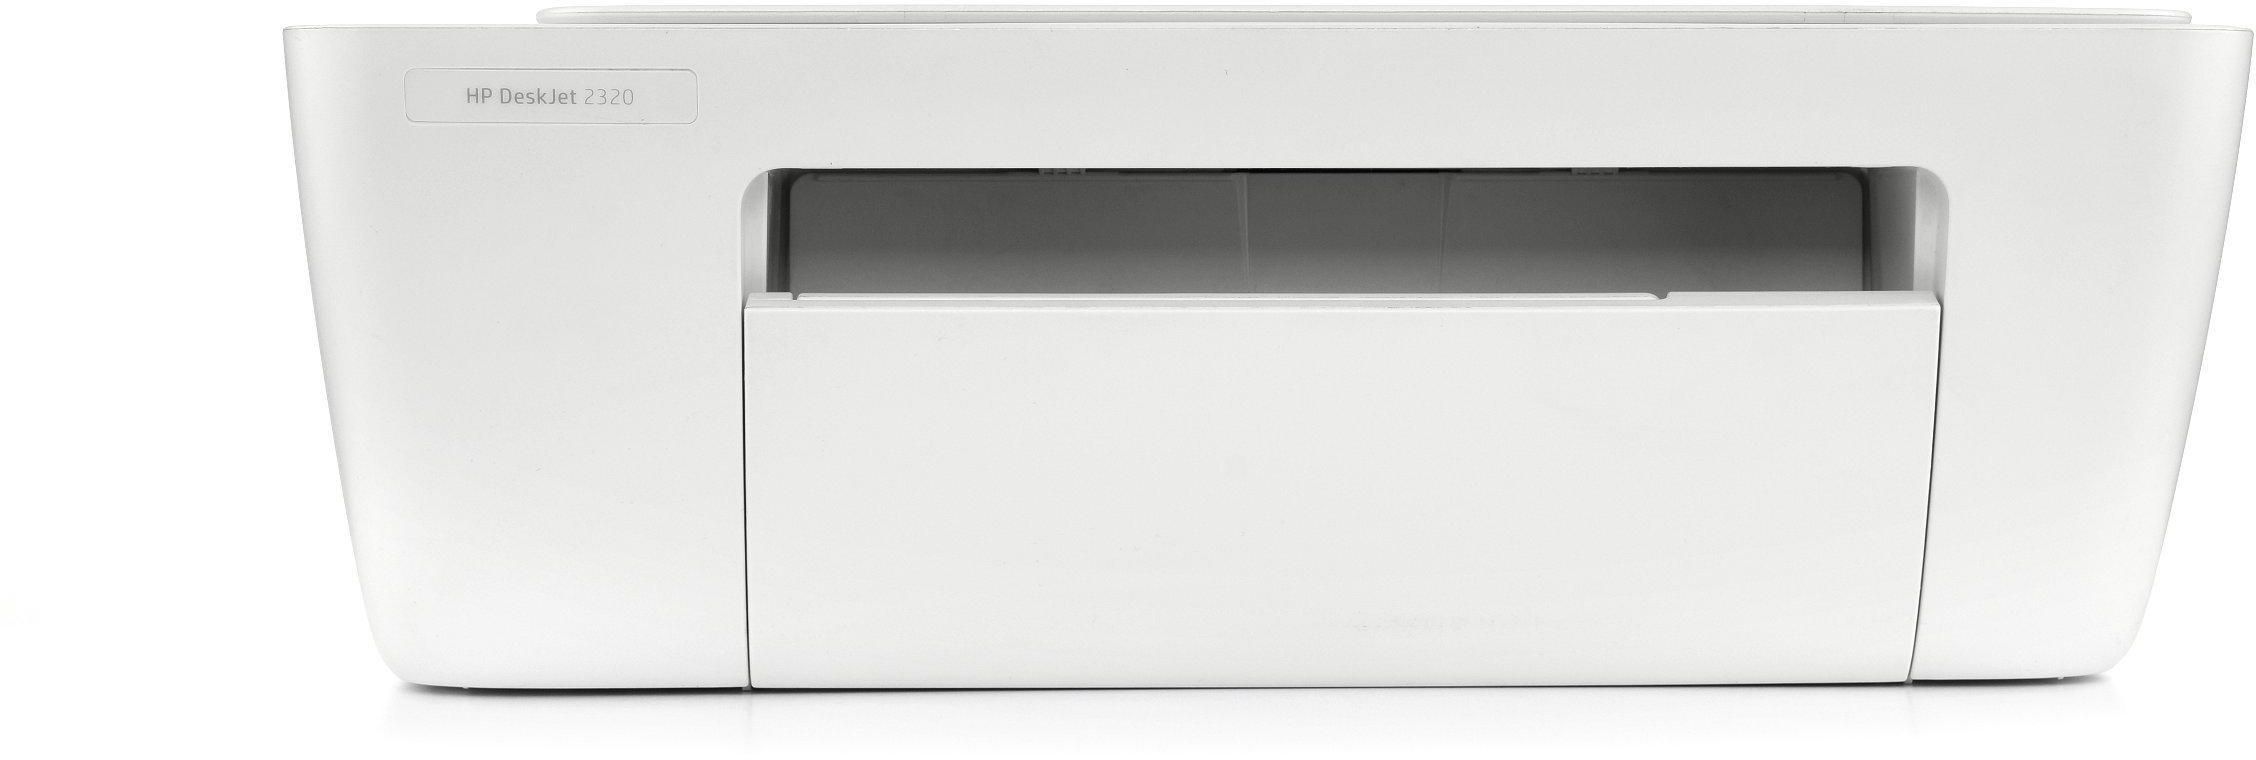 HP DeskJet 2320 All-in-One Printer, Print, Copy, Scan, HP Thermal Inkjet